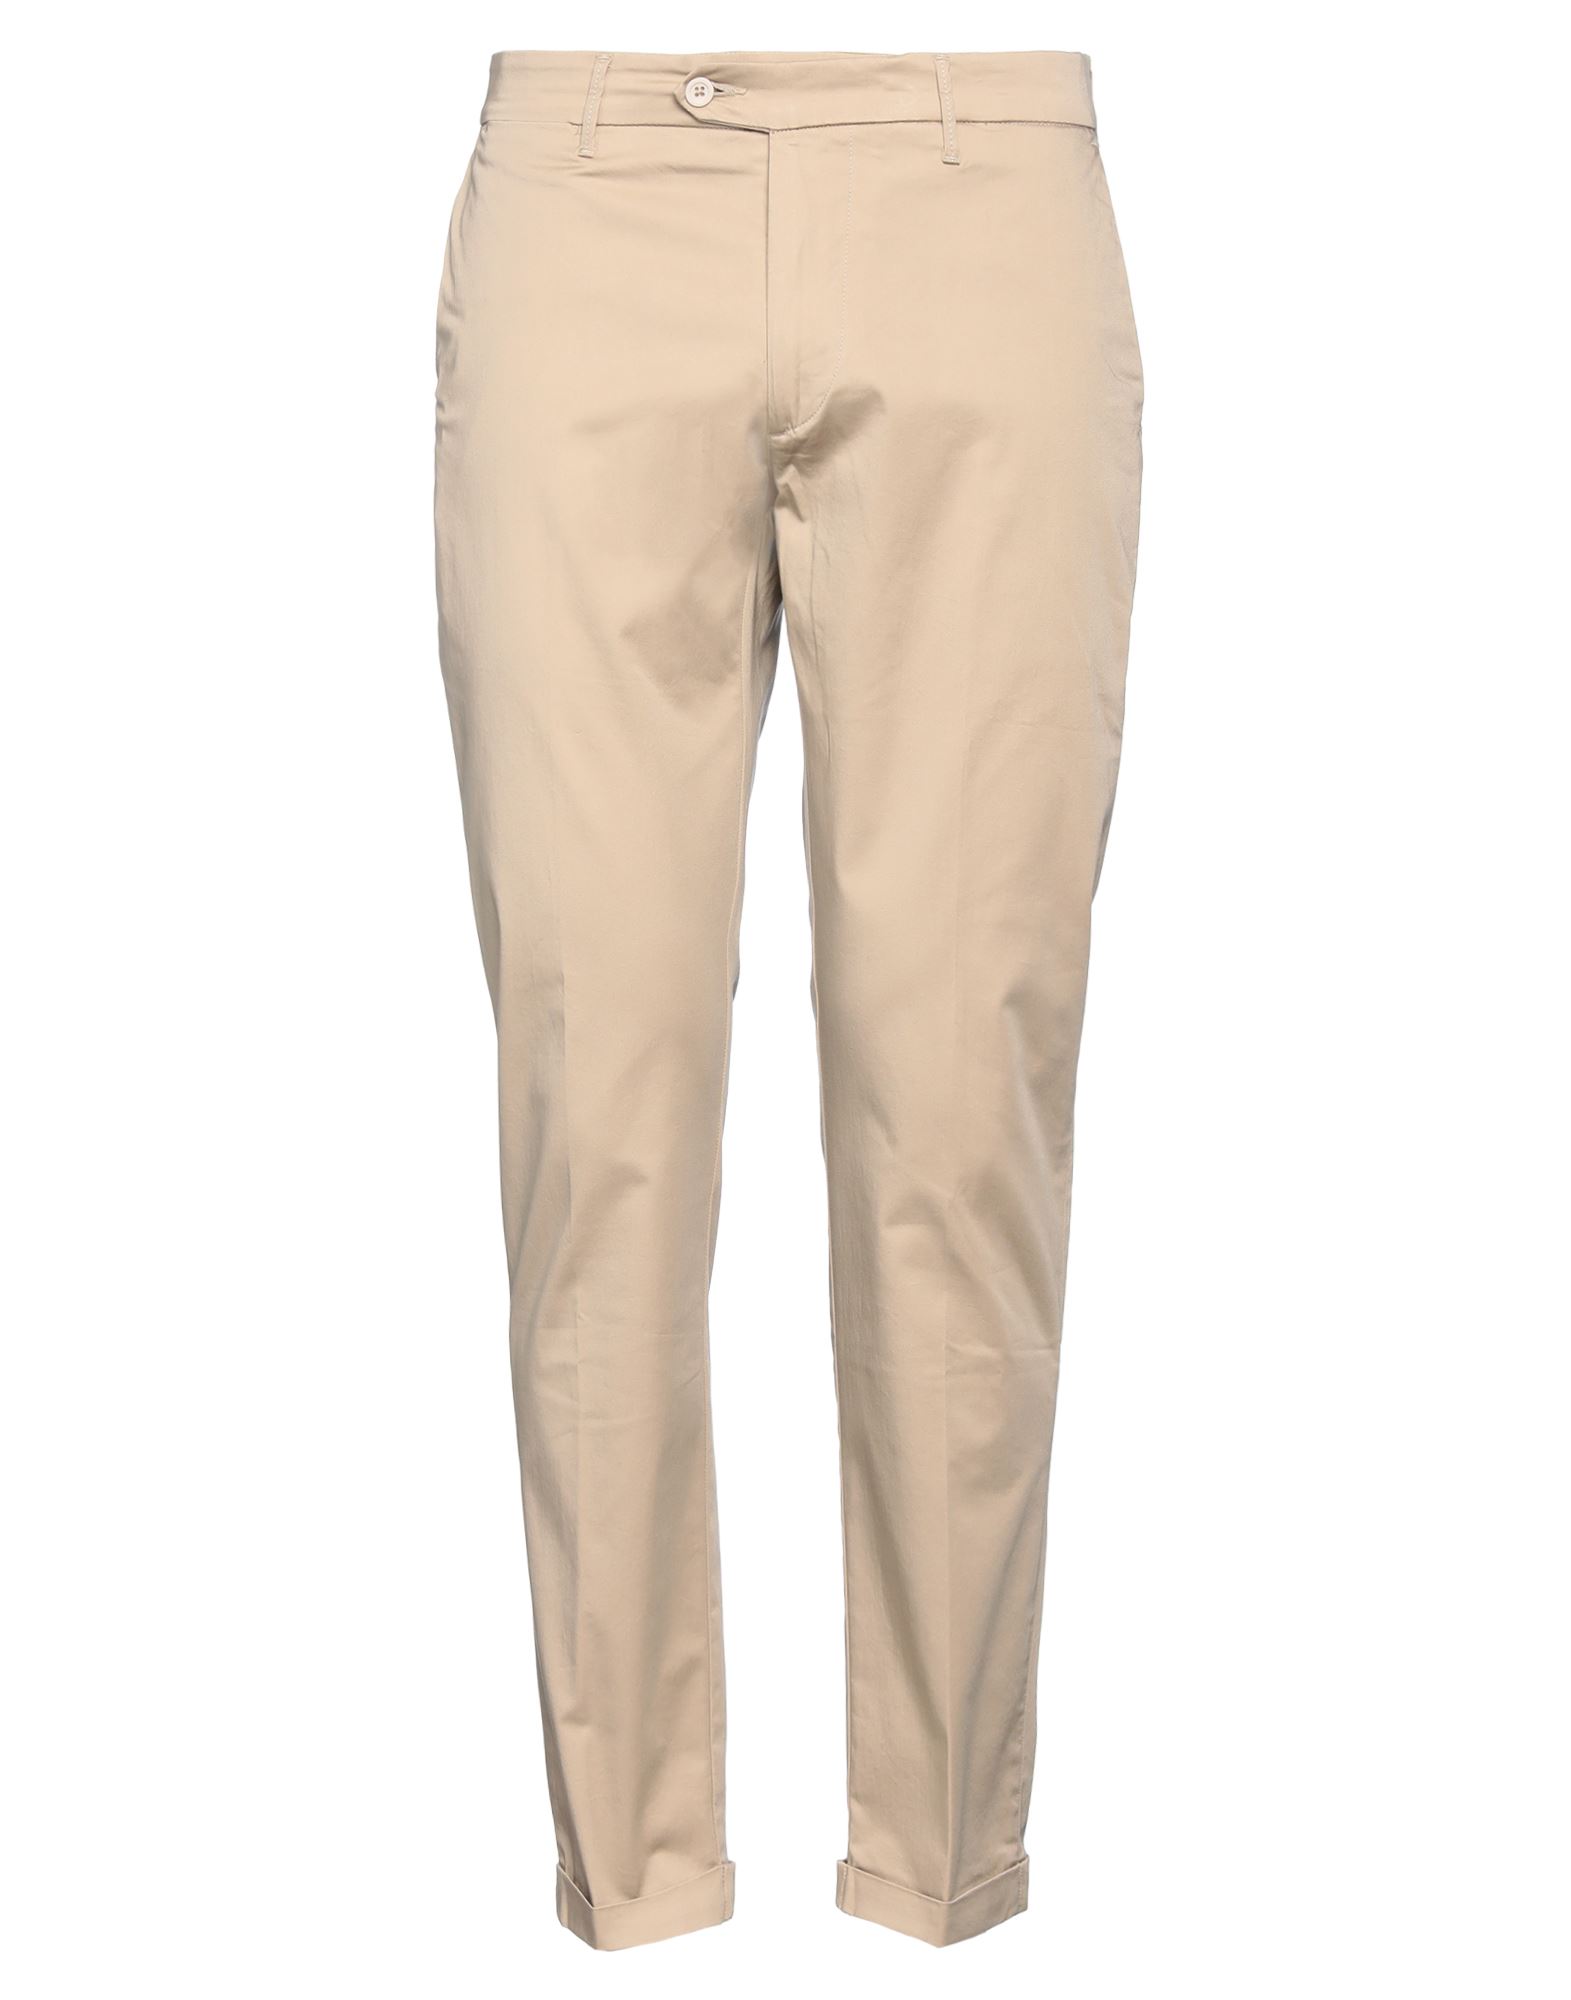 0/zero Construction Man Pants Beige Size 31 Cotton, Elastane